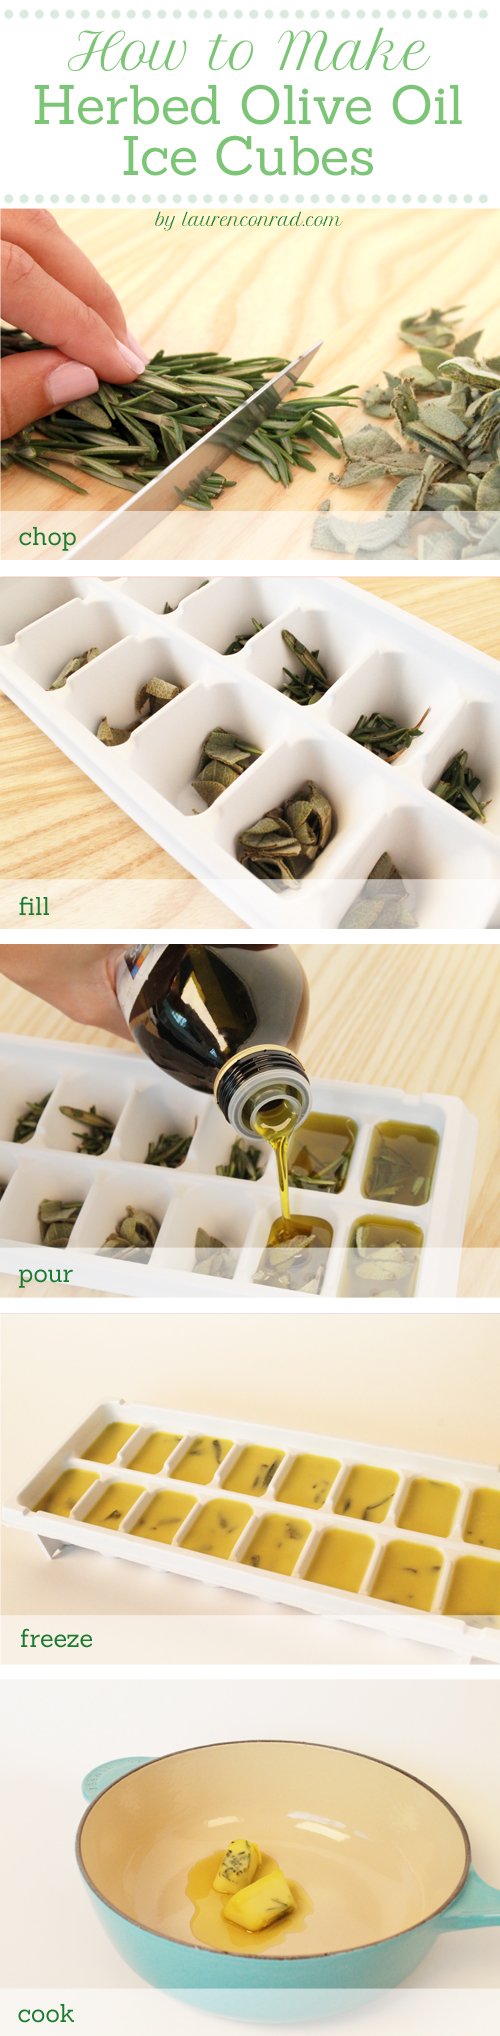 Odds & Ends: Herbed Olive Oil Cubes